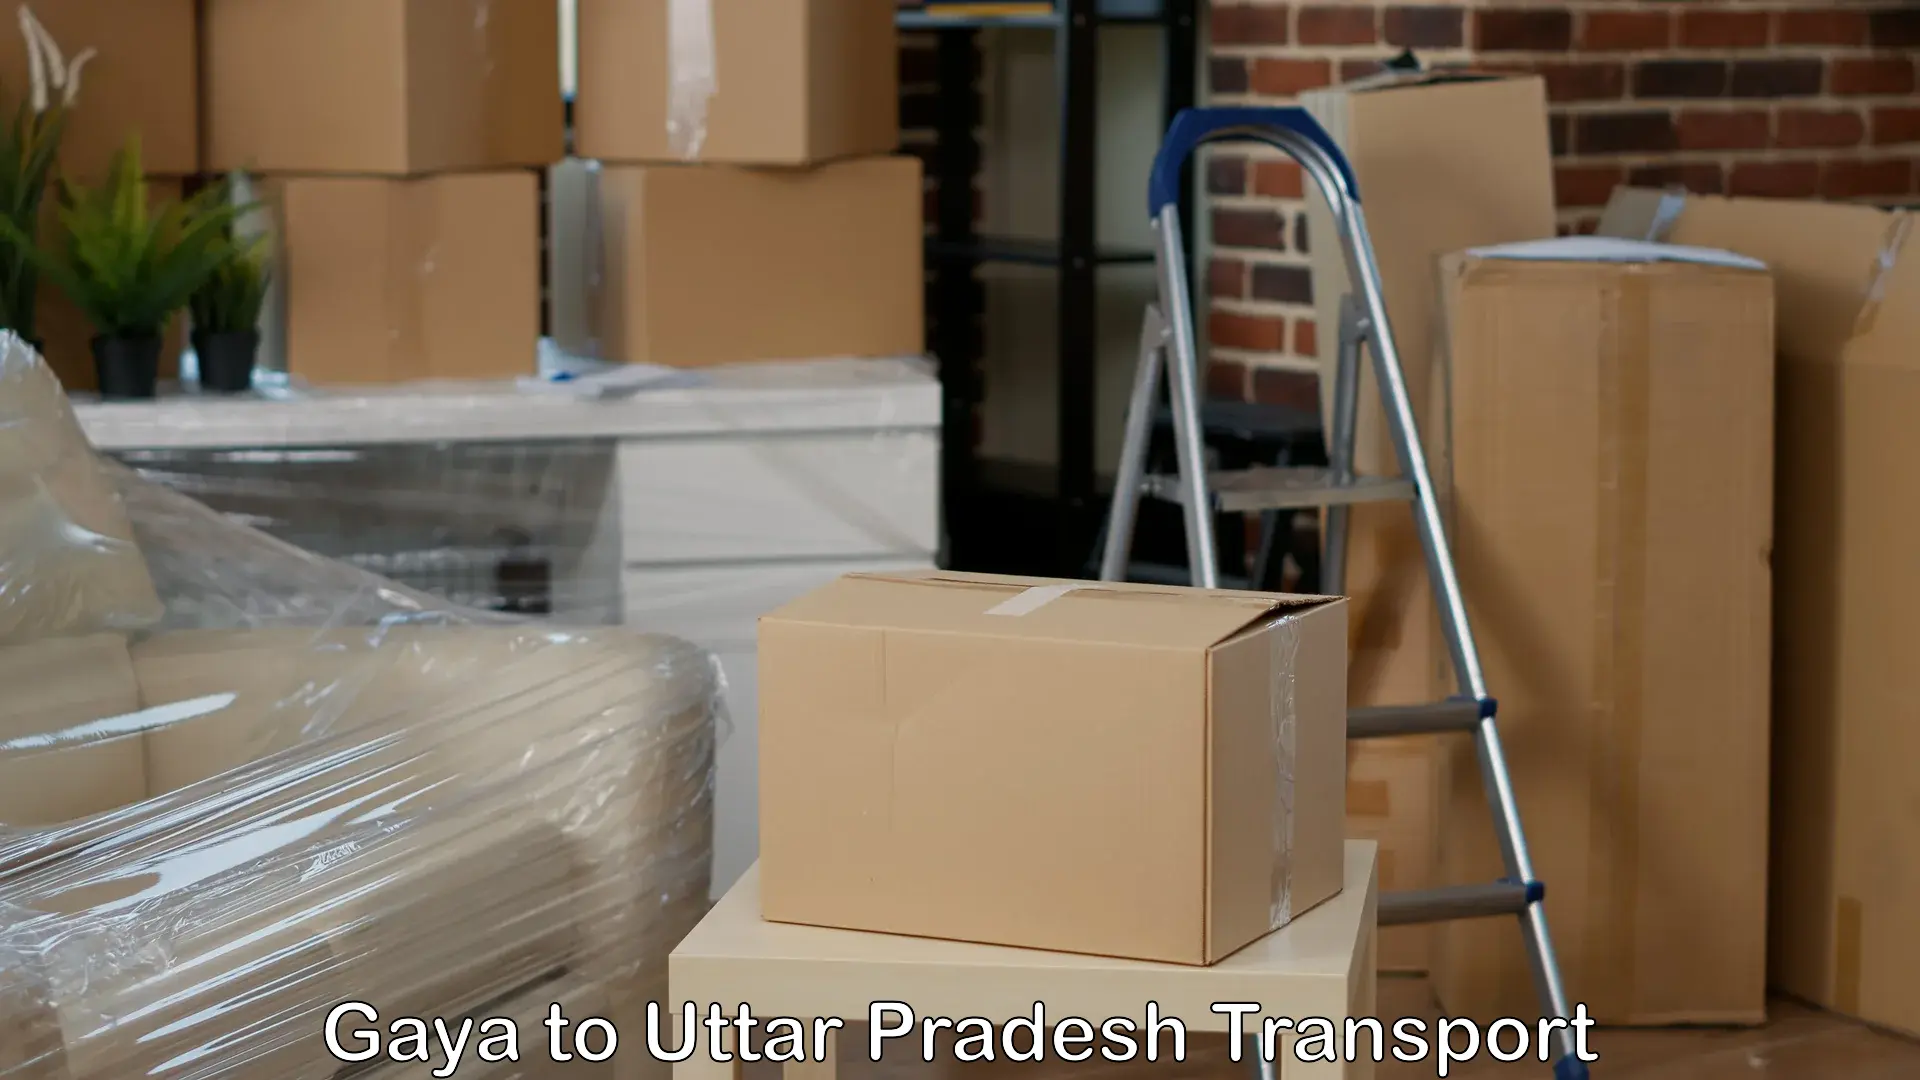 Luggage transport services in Gaya to Dadri